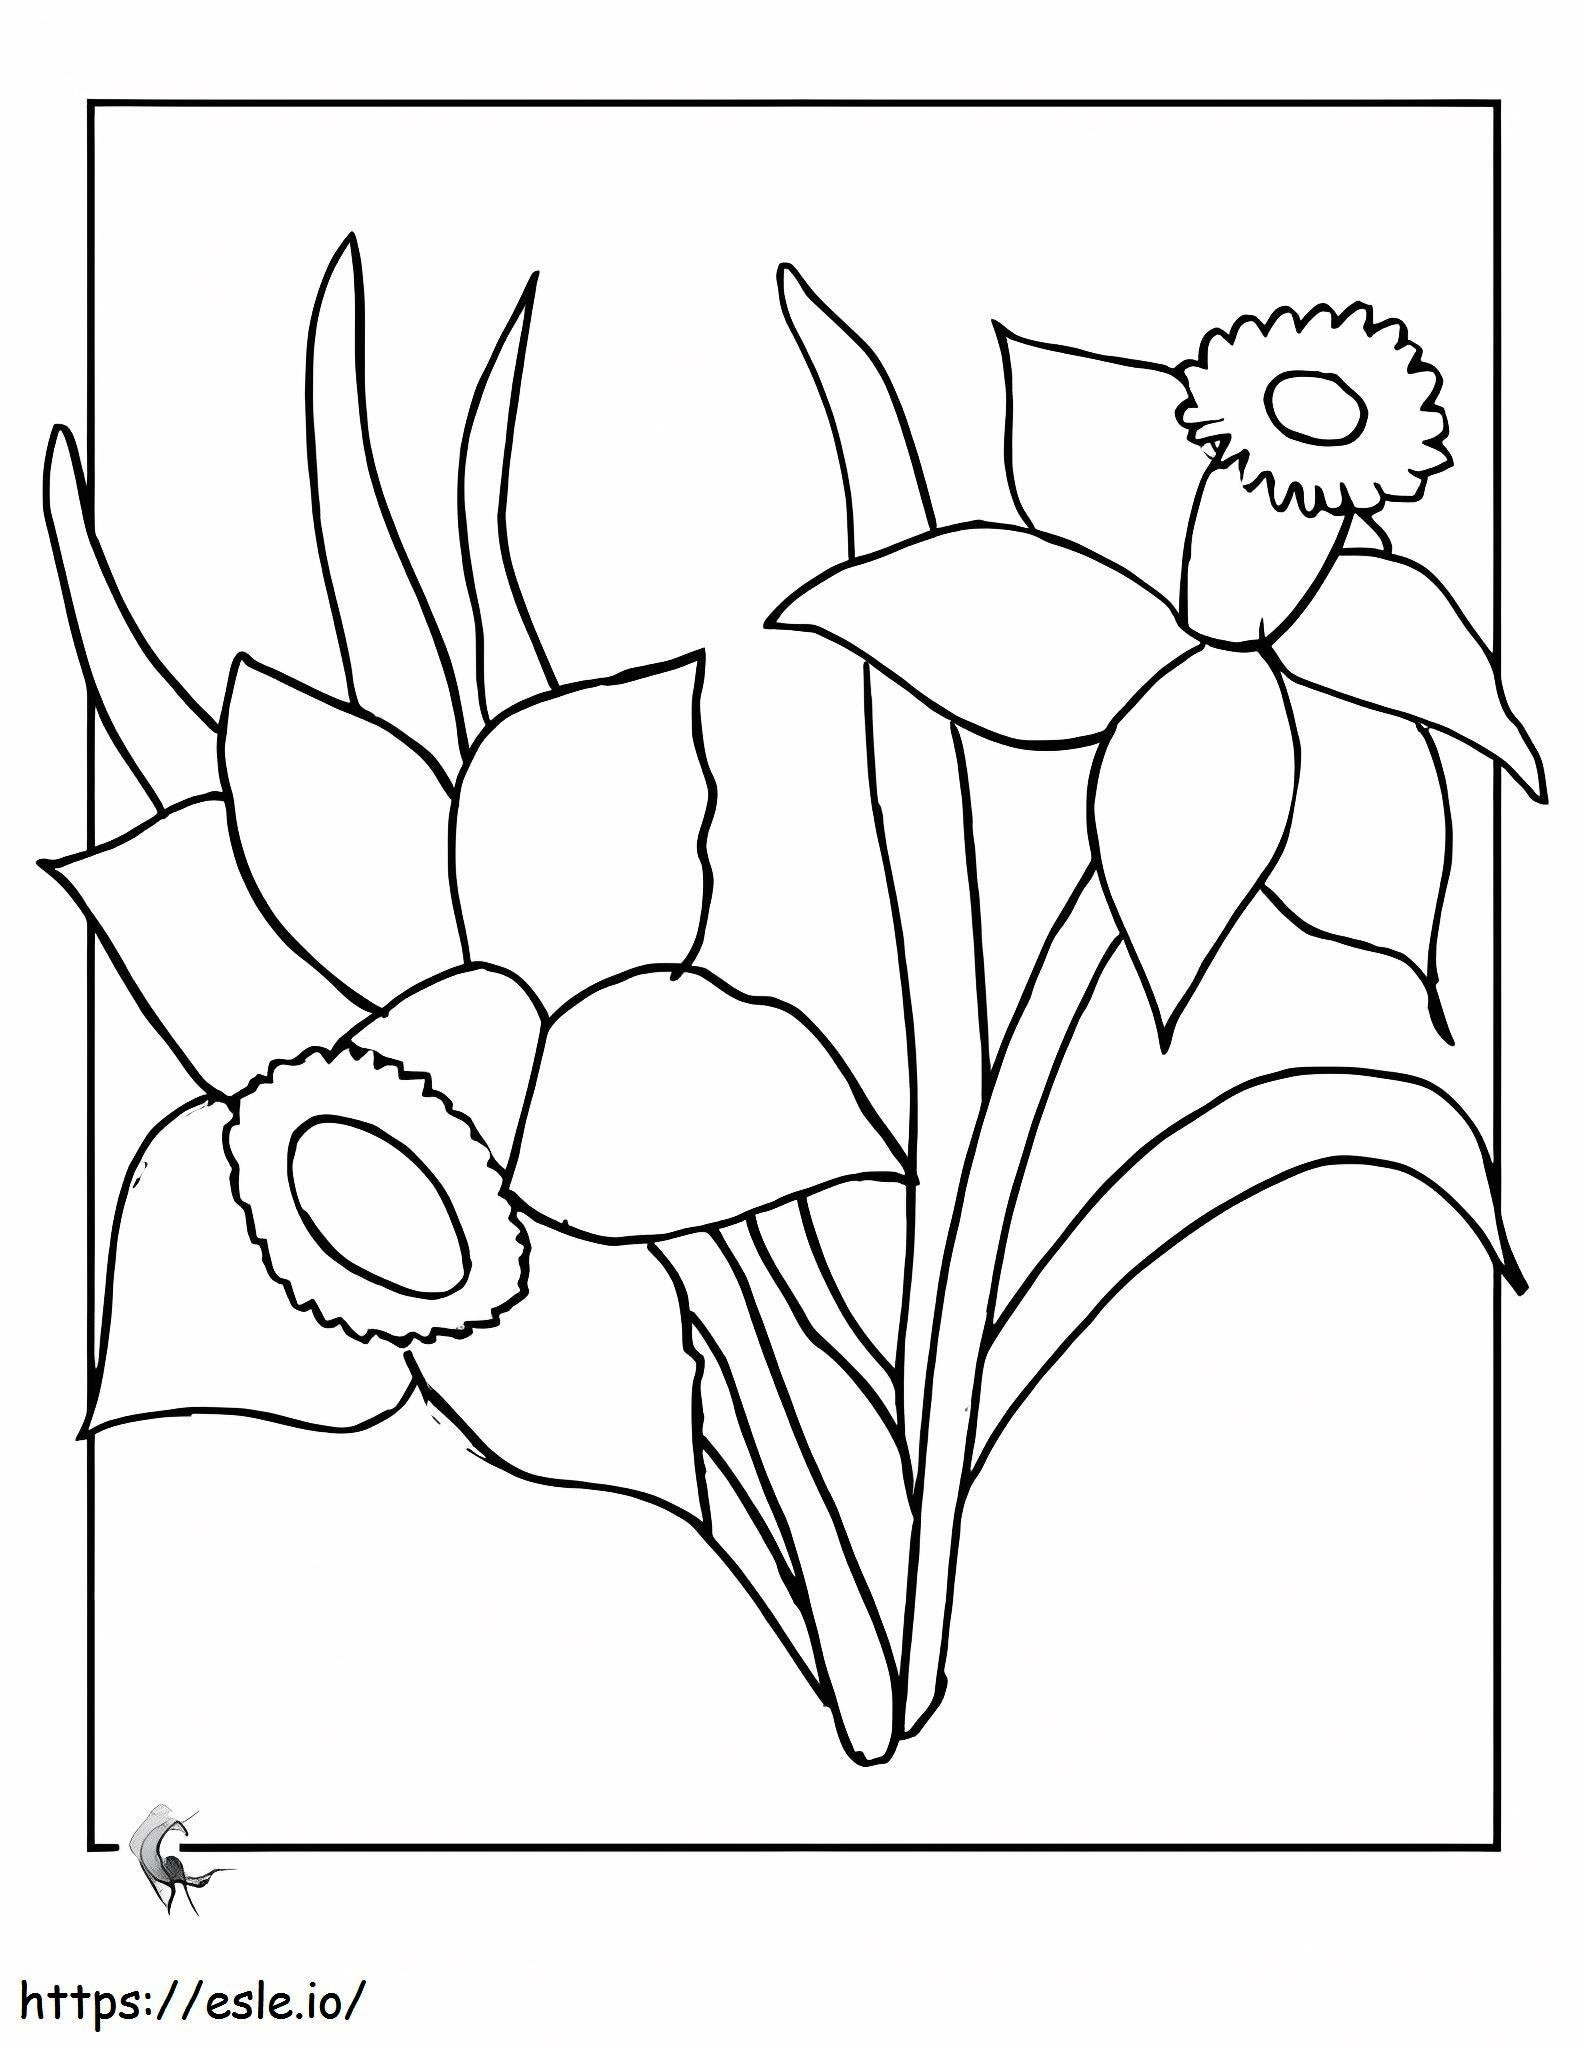 Coloriage Narcisse étonnant à imprimer dessin